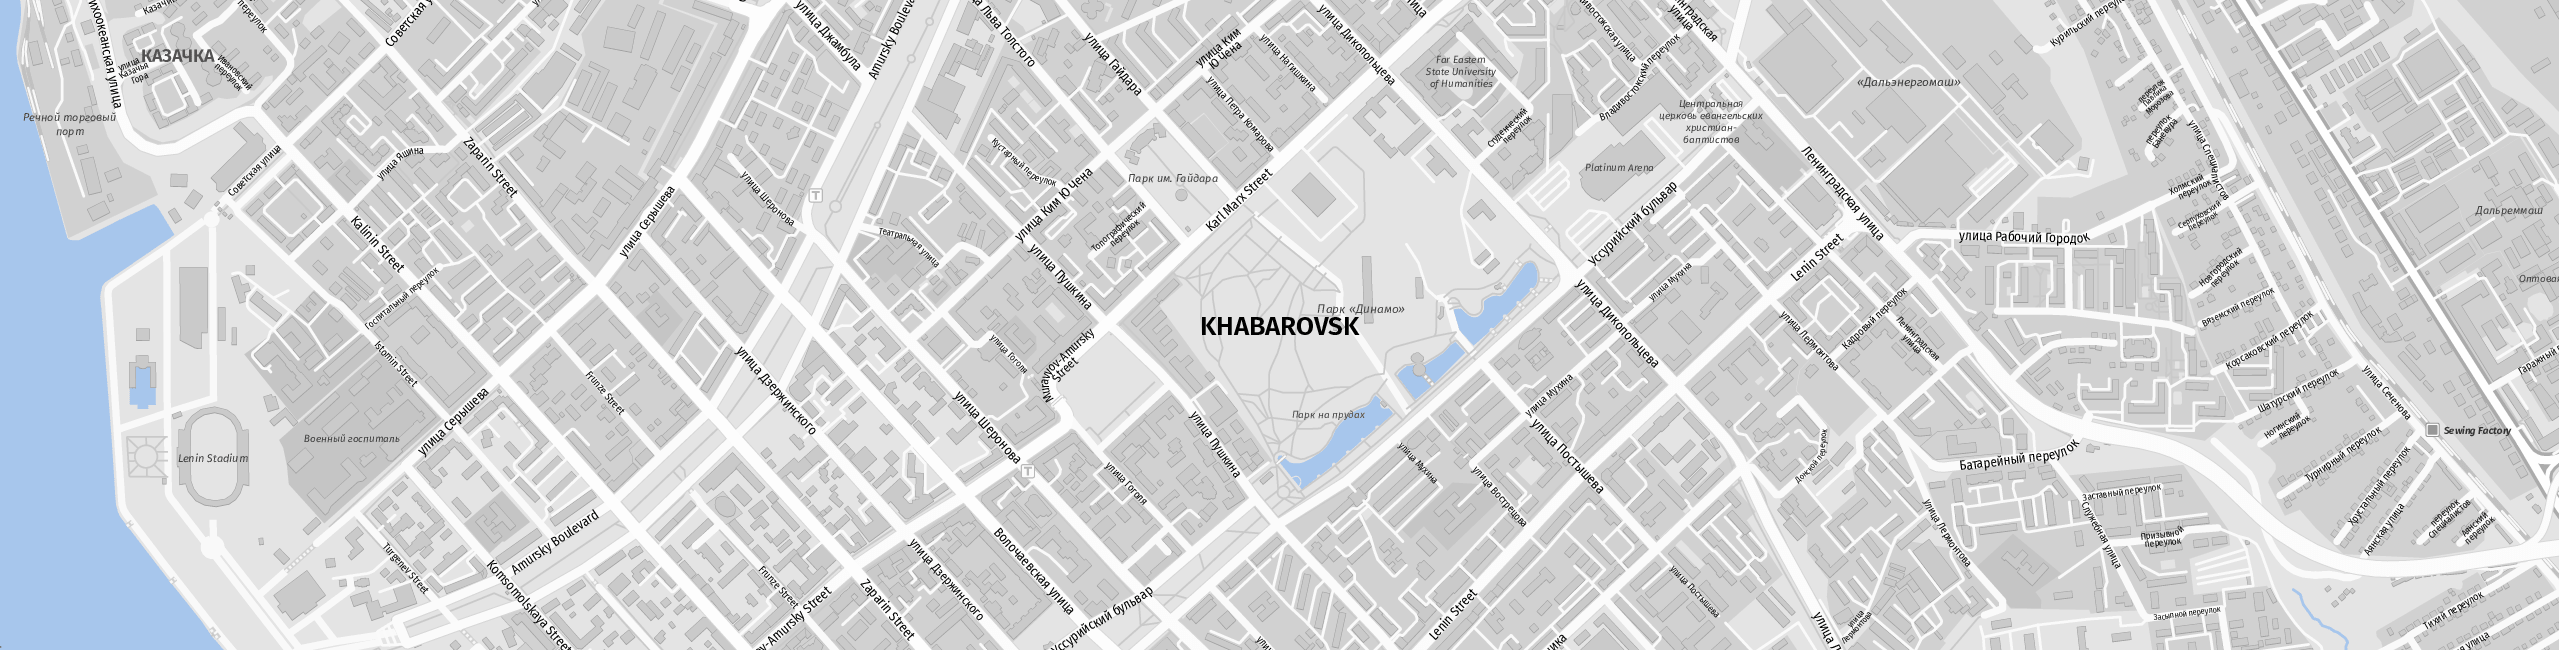 Stadtplan Khabarovsk zum Downloaden.